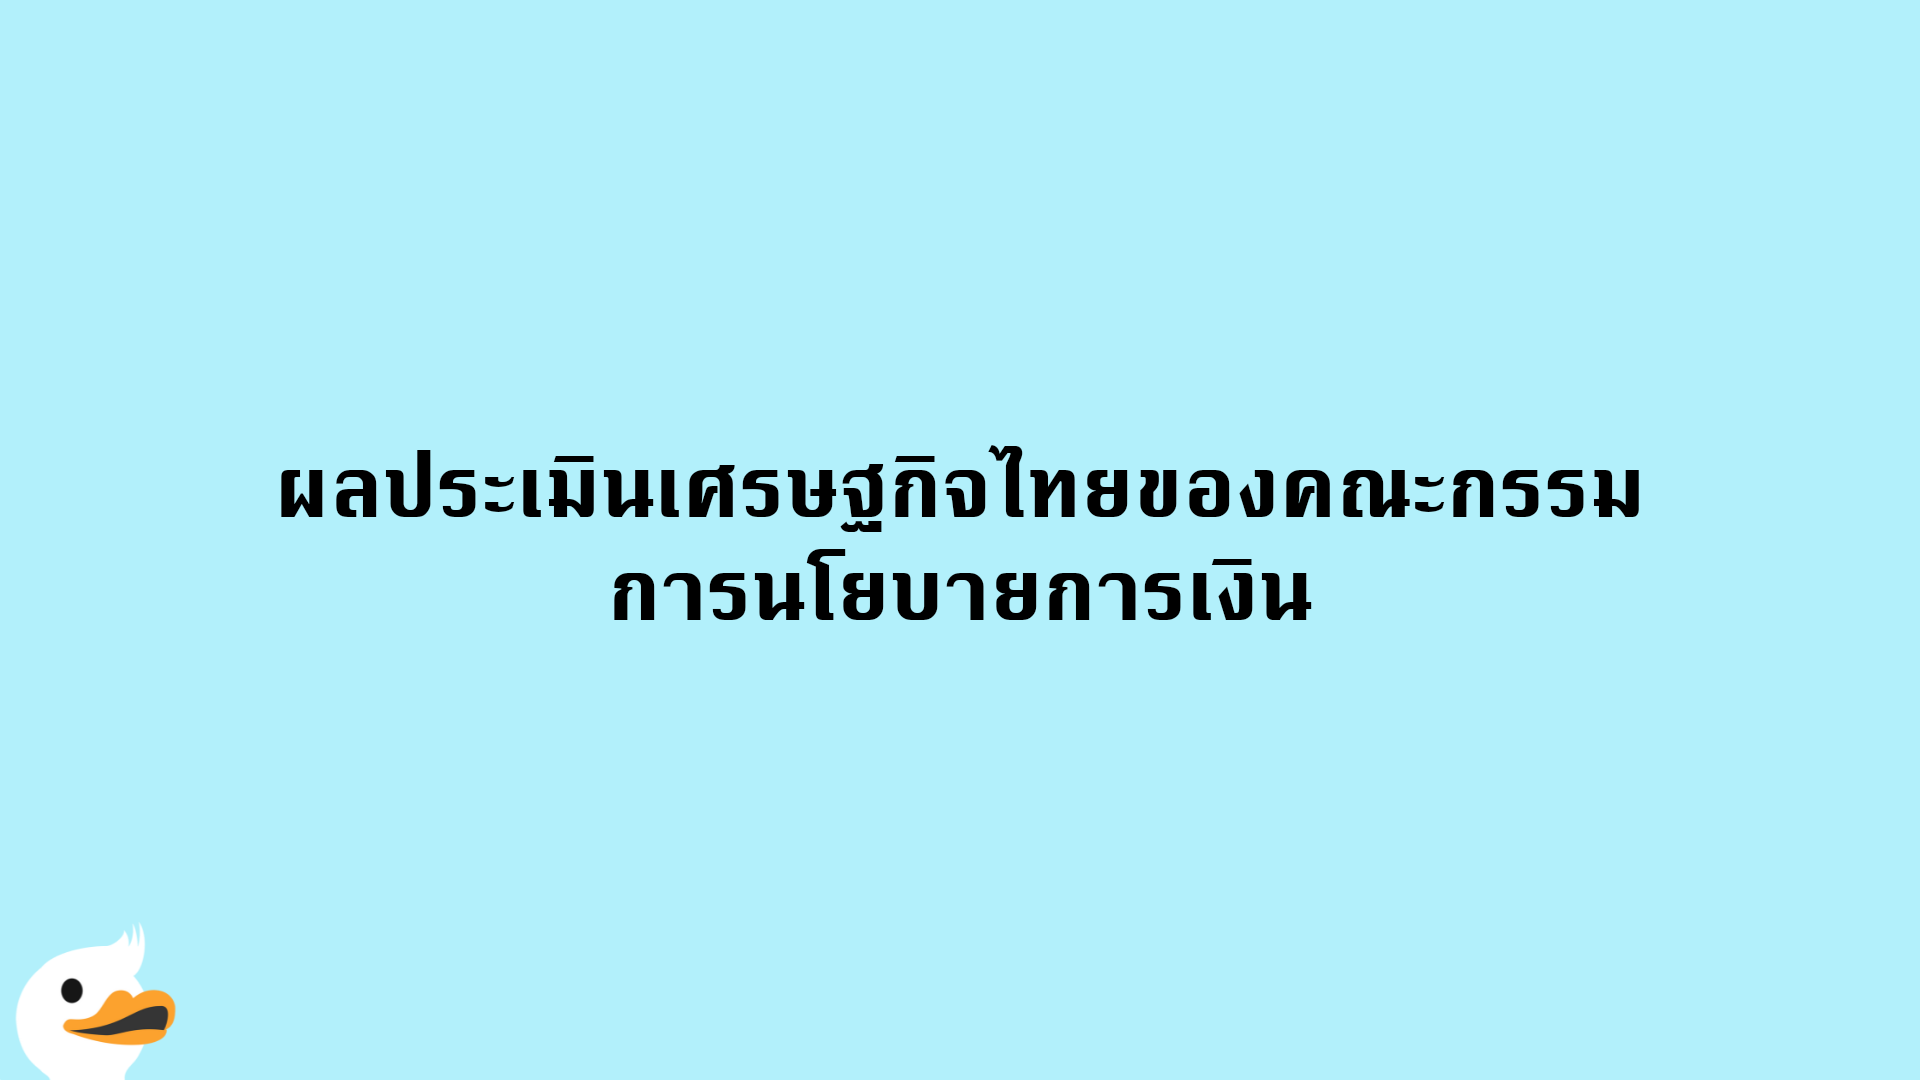 ผลประเมินเศรษฐกิจไทยของคณะกรรมการนโยบายการเงิน